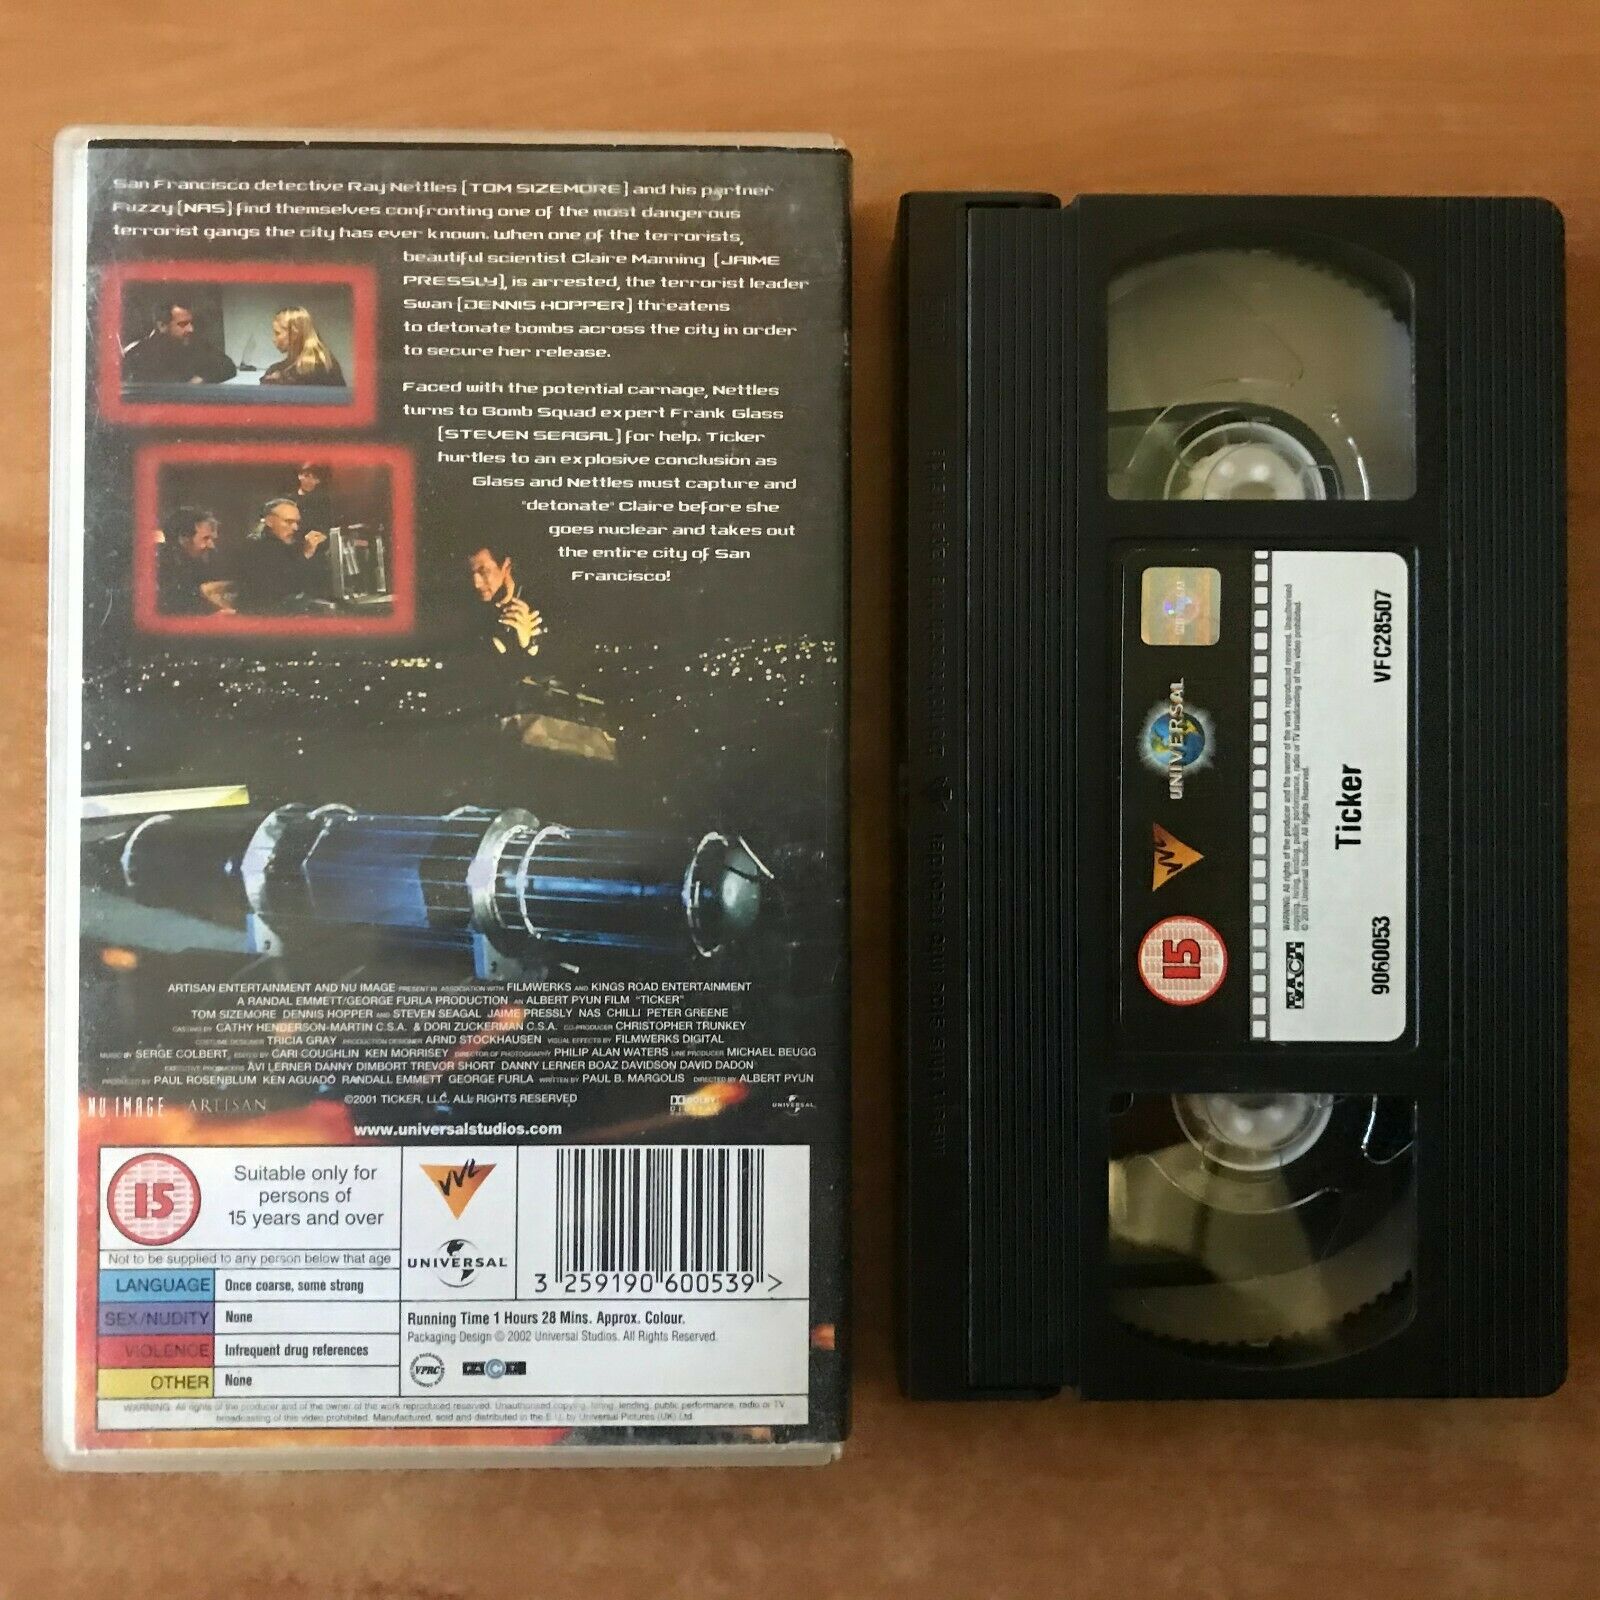 Ticker: Time Bomb Fever [Action Thriller] Steven Seagal/Dennis Hopper - Pal VHS-